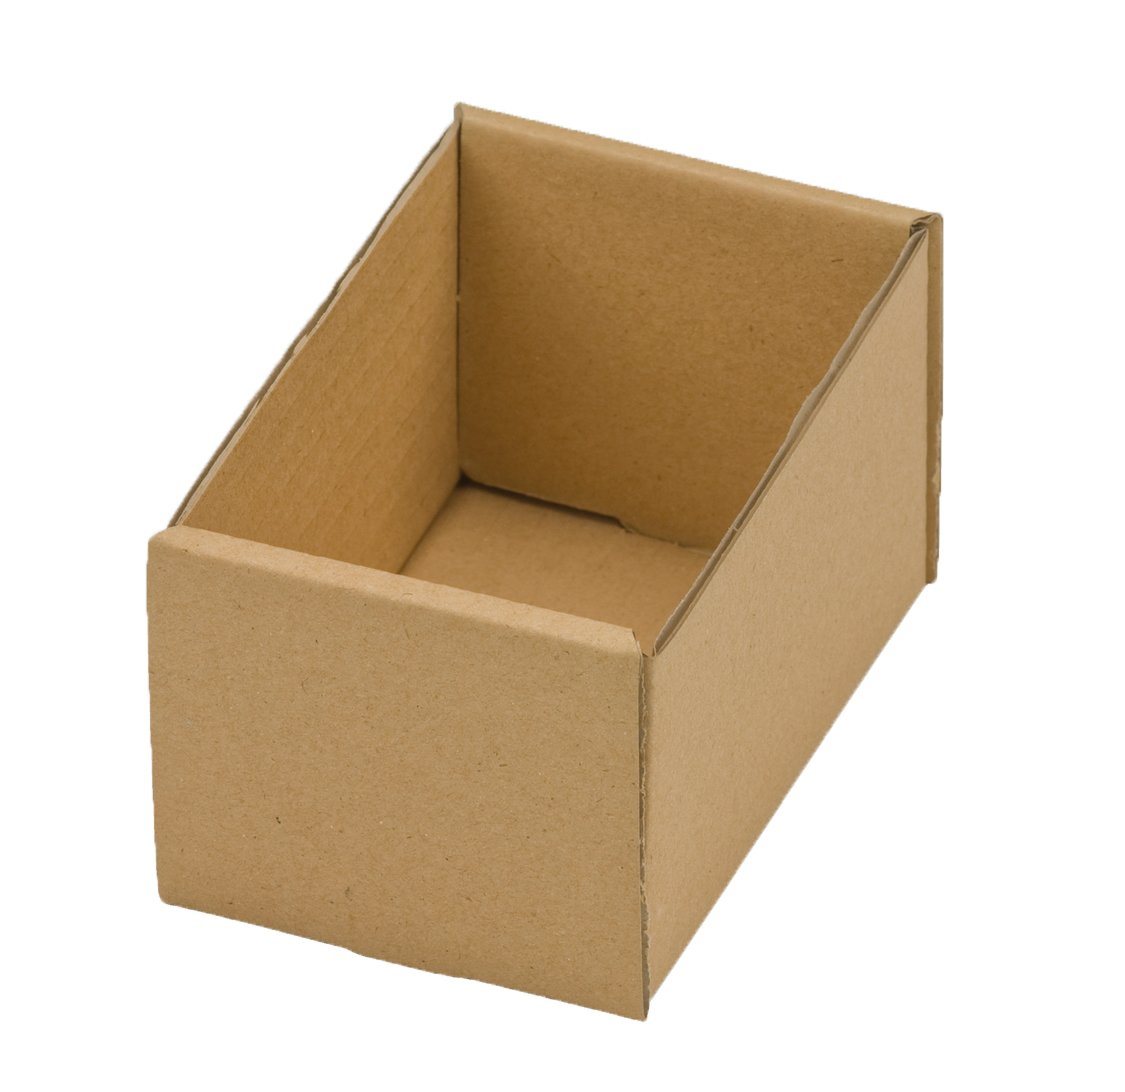 NIPS Aufbewahrungsbox REGAL-TRAY ODO - Regalkasten - Schraubenkarton (20 Stück), braun, Tiefe 8 cm, Höhe 7 cm, verschiedene Breiten, Wellkarton, Pappe von NIPS